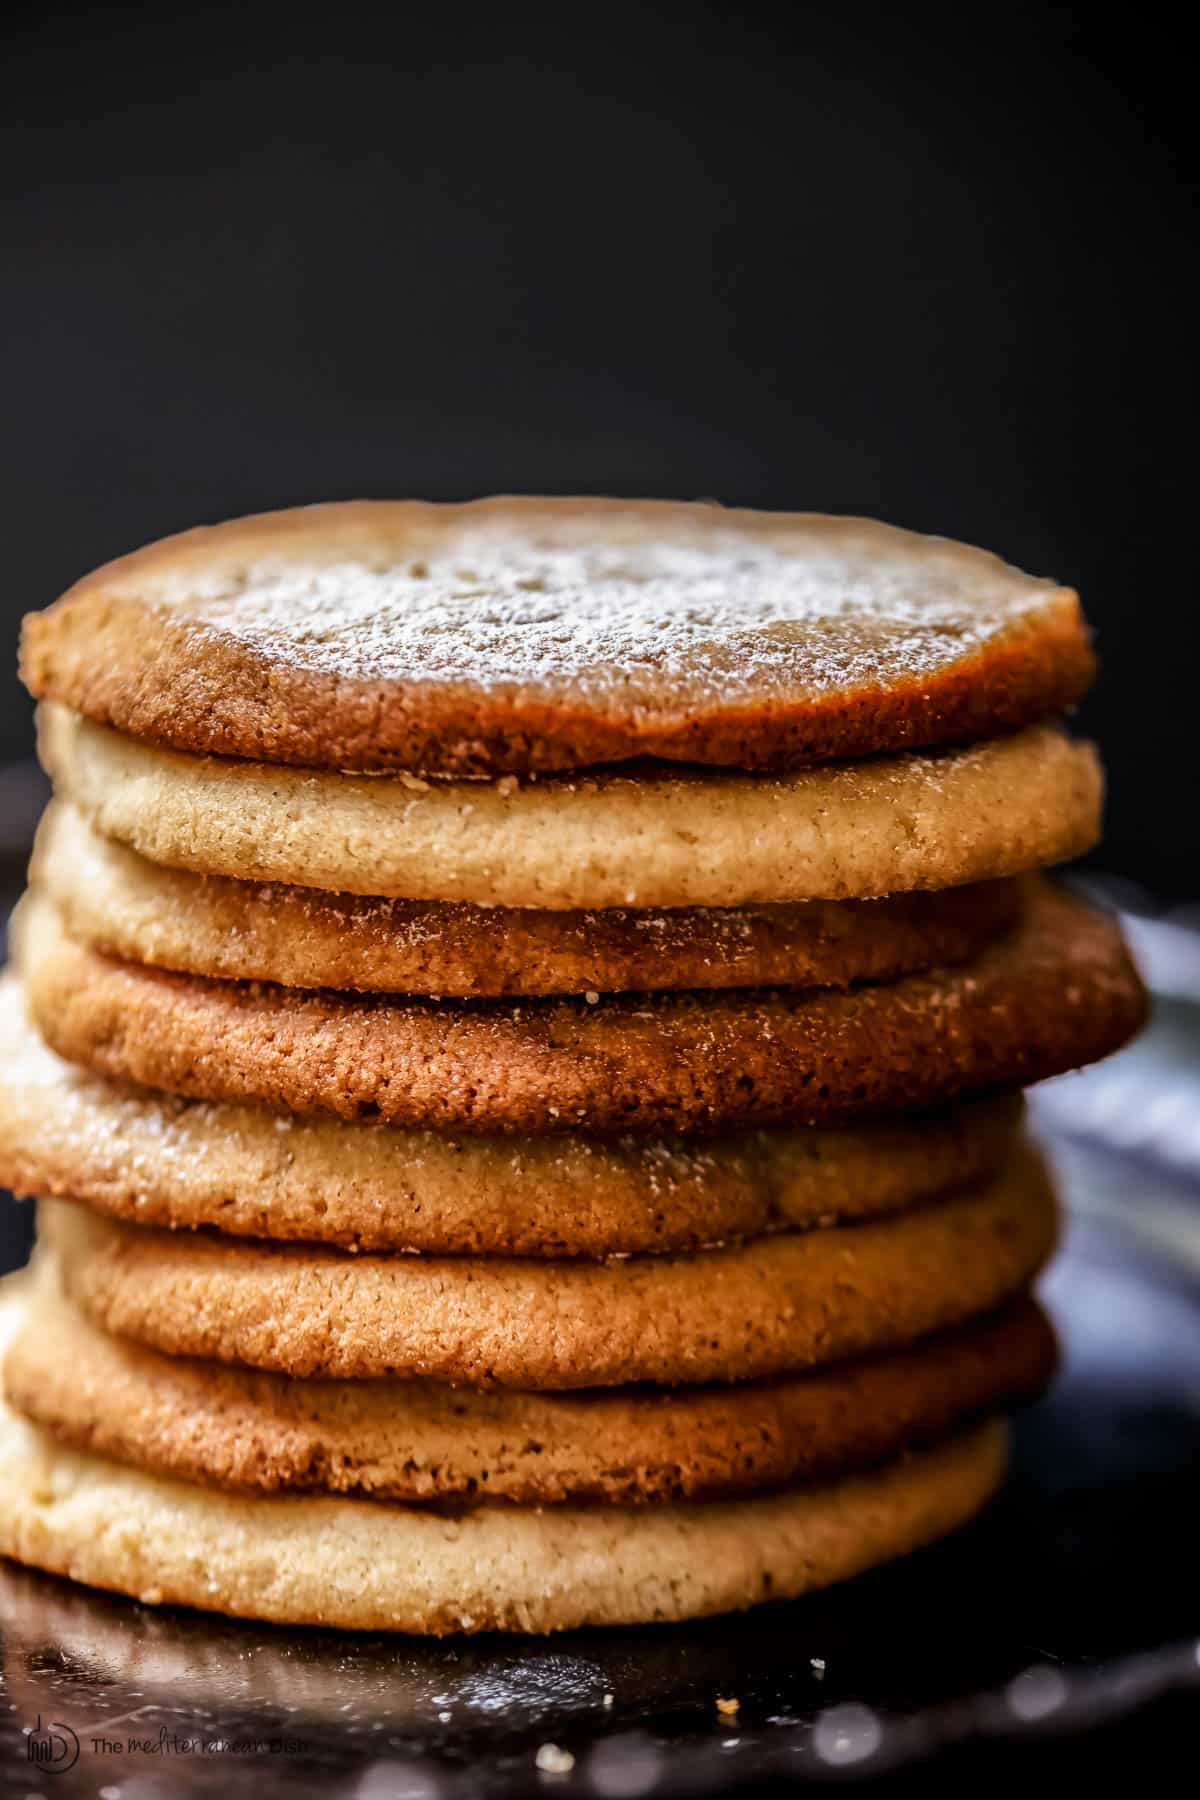 https://www.themediterraneandish.com/wp-content/uploads/2020/02/Tahini-cookies-recipe-15.jpg